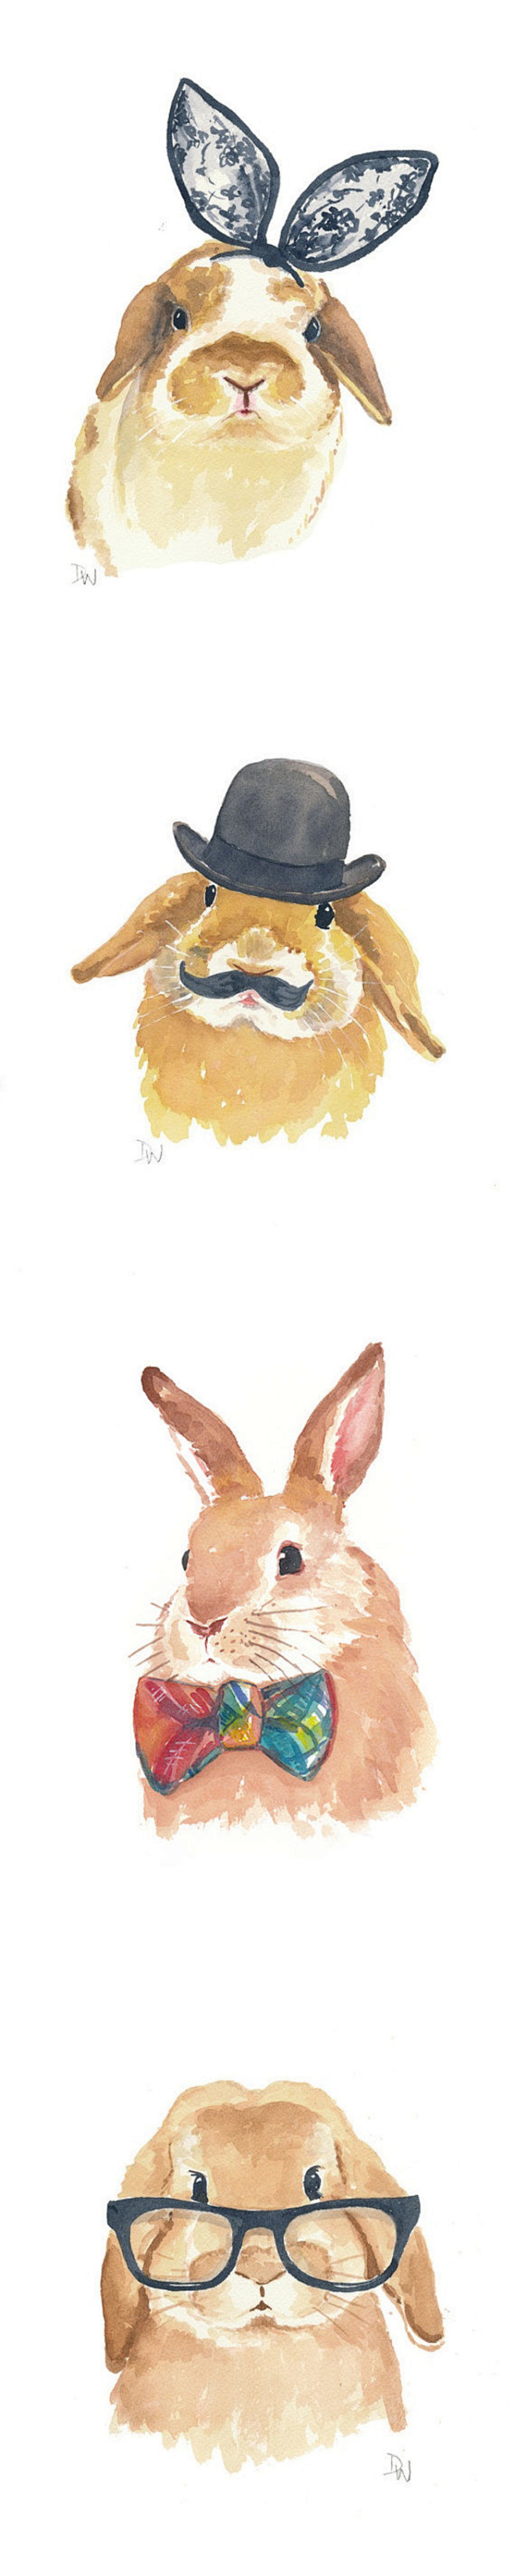 插画手绘 水彩 兔子 动漫 萌 壁纸